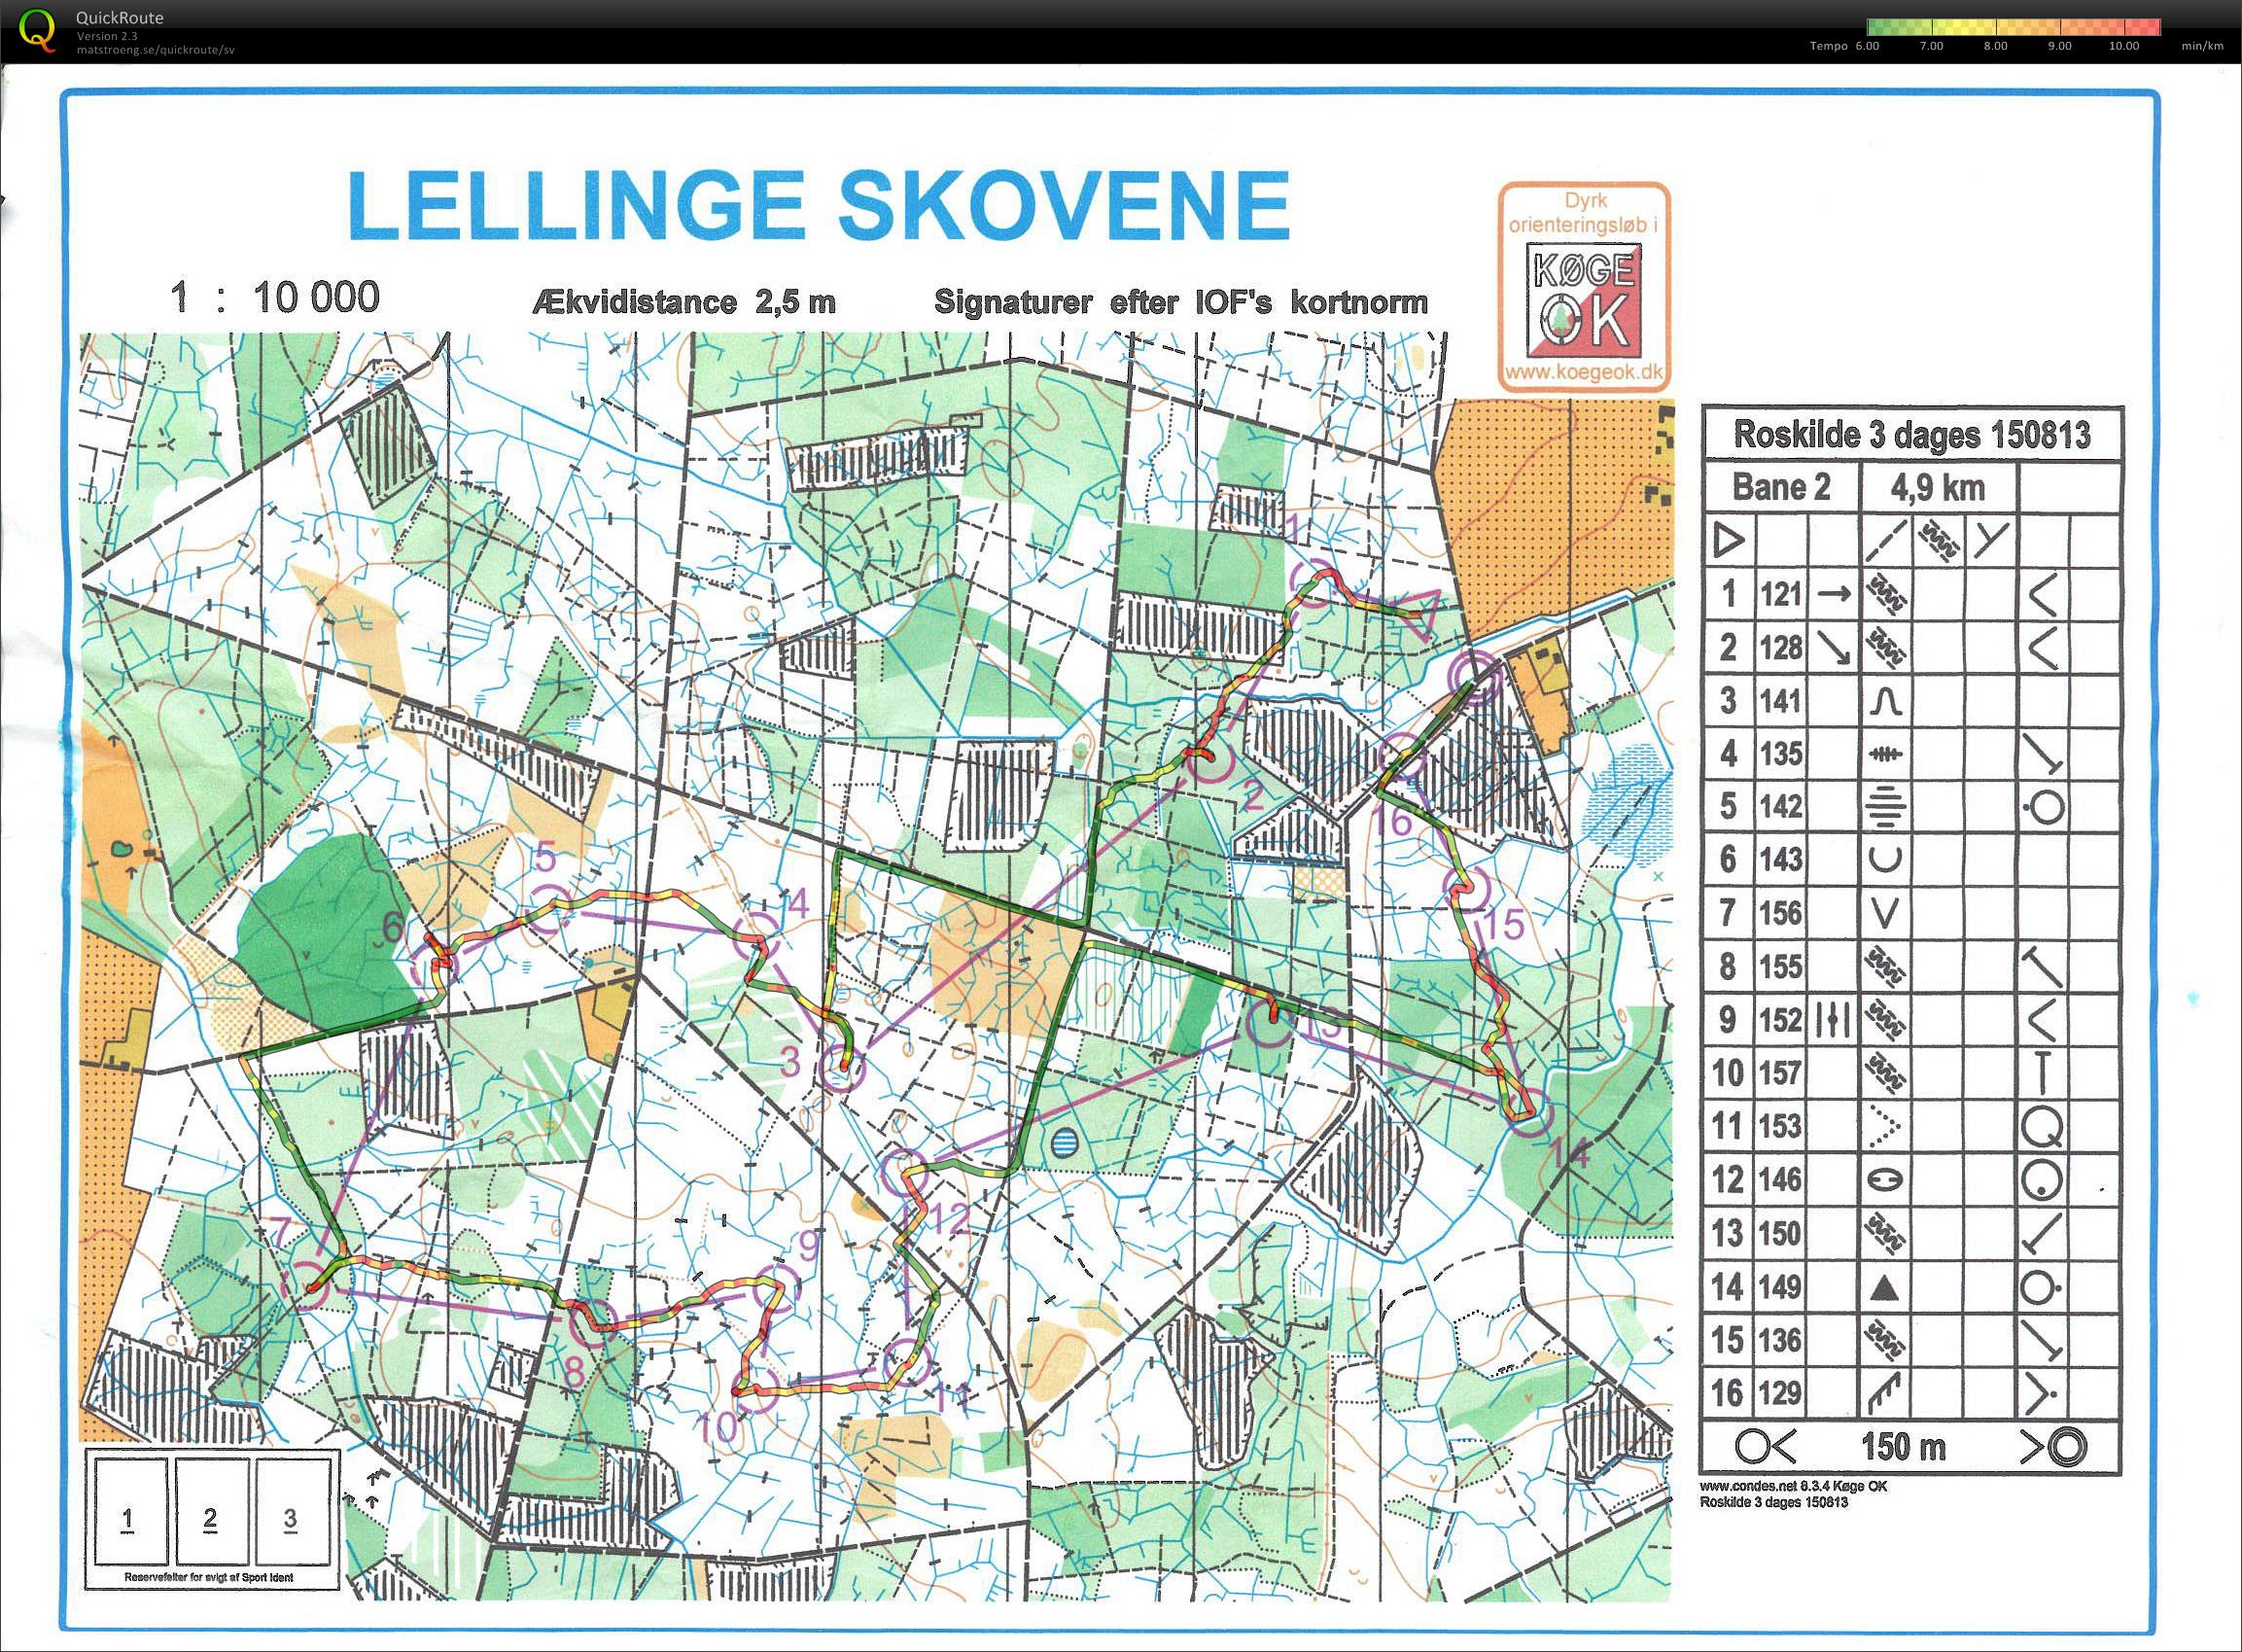 Roskilde 3-dages, 1. etape (15-08-2013)